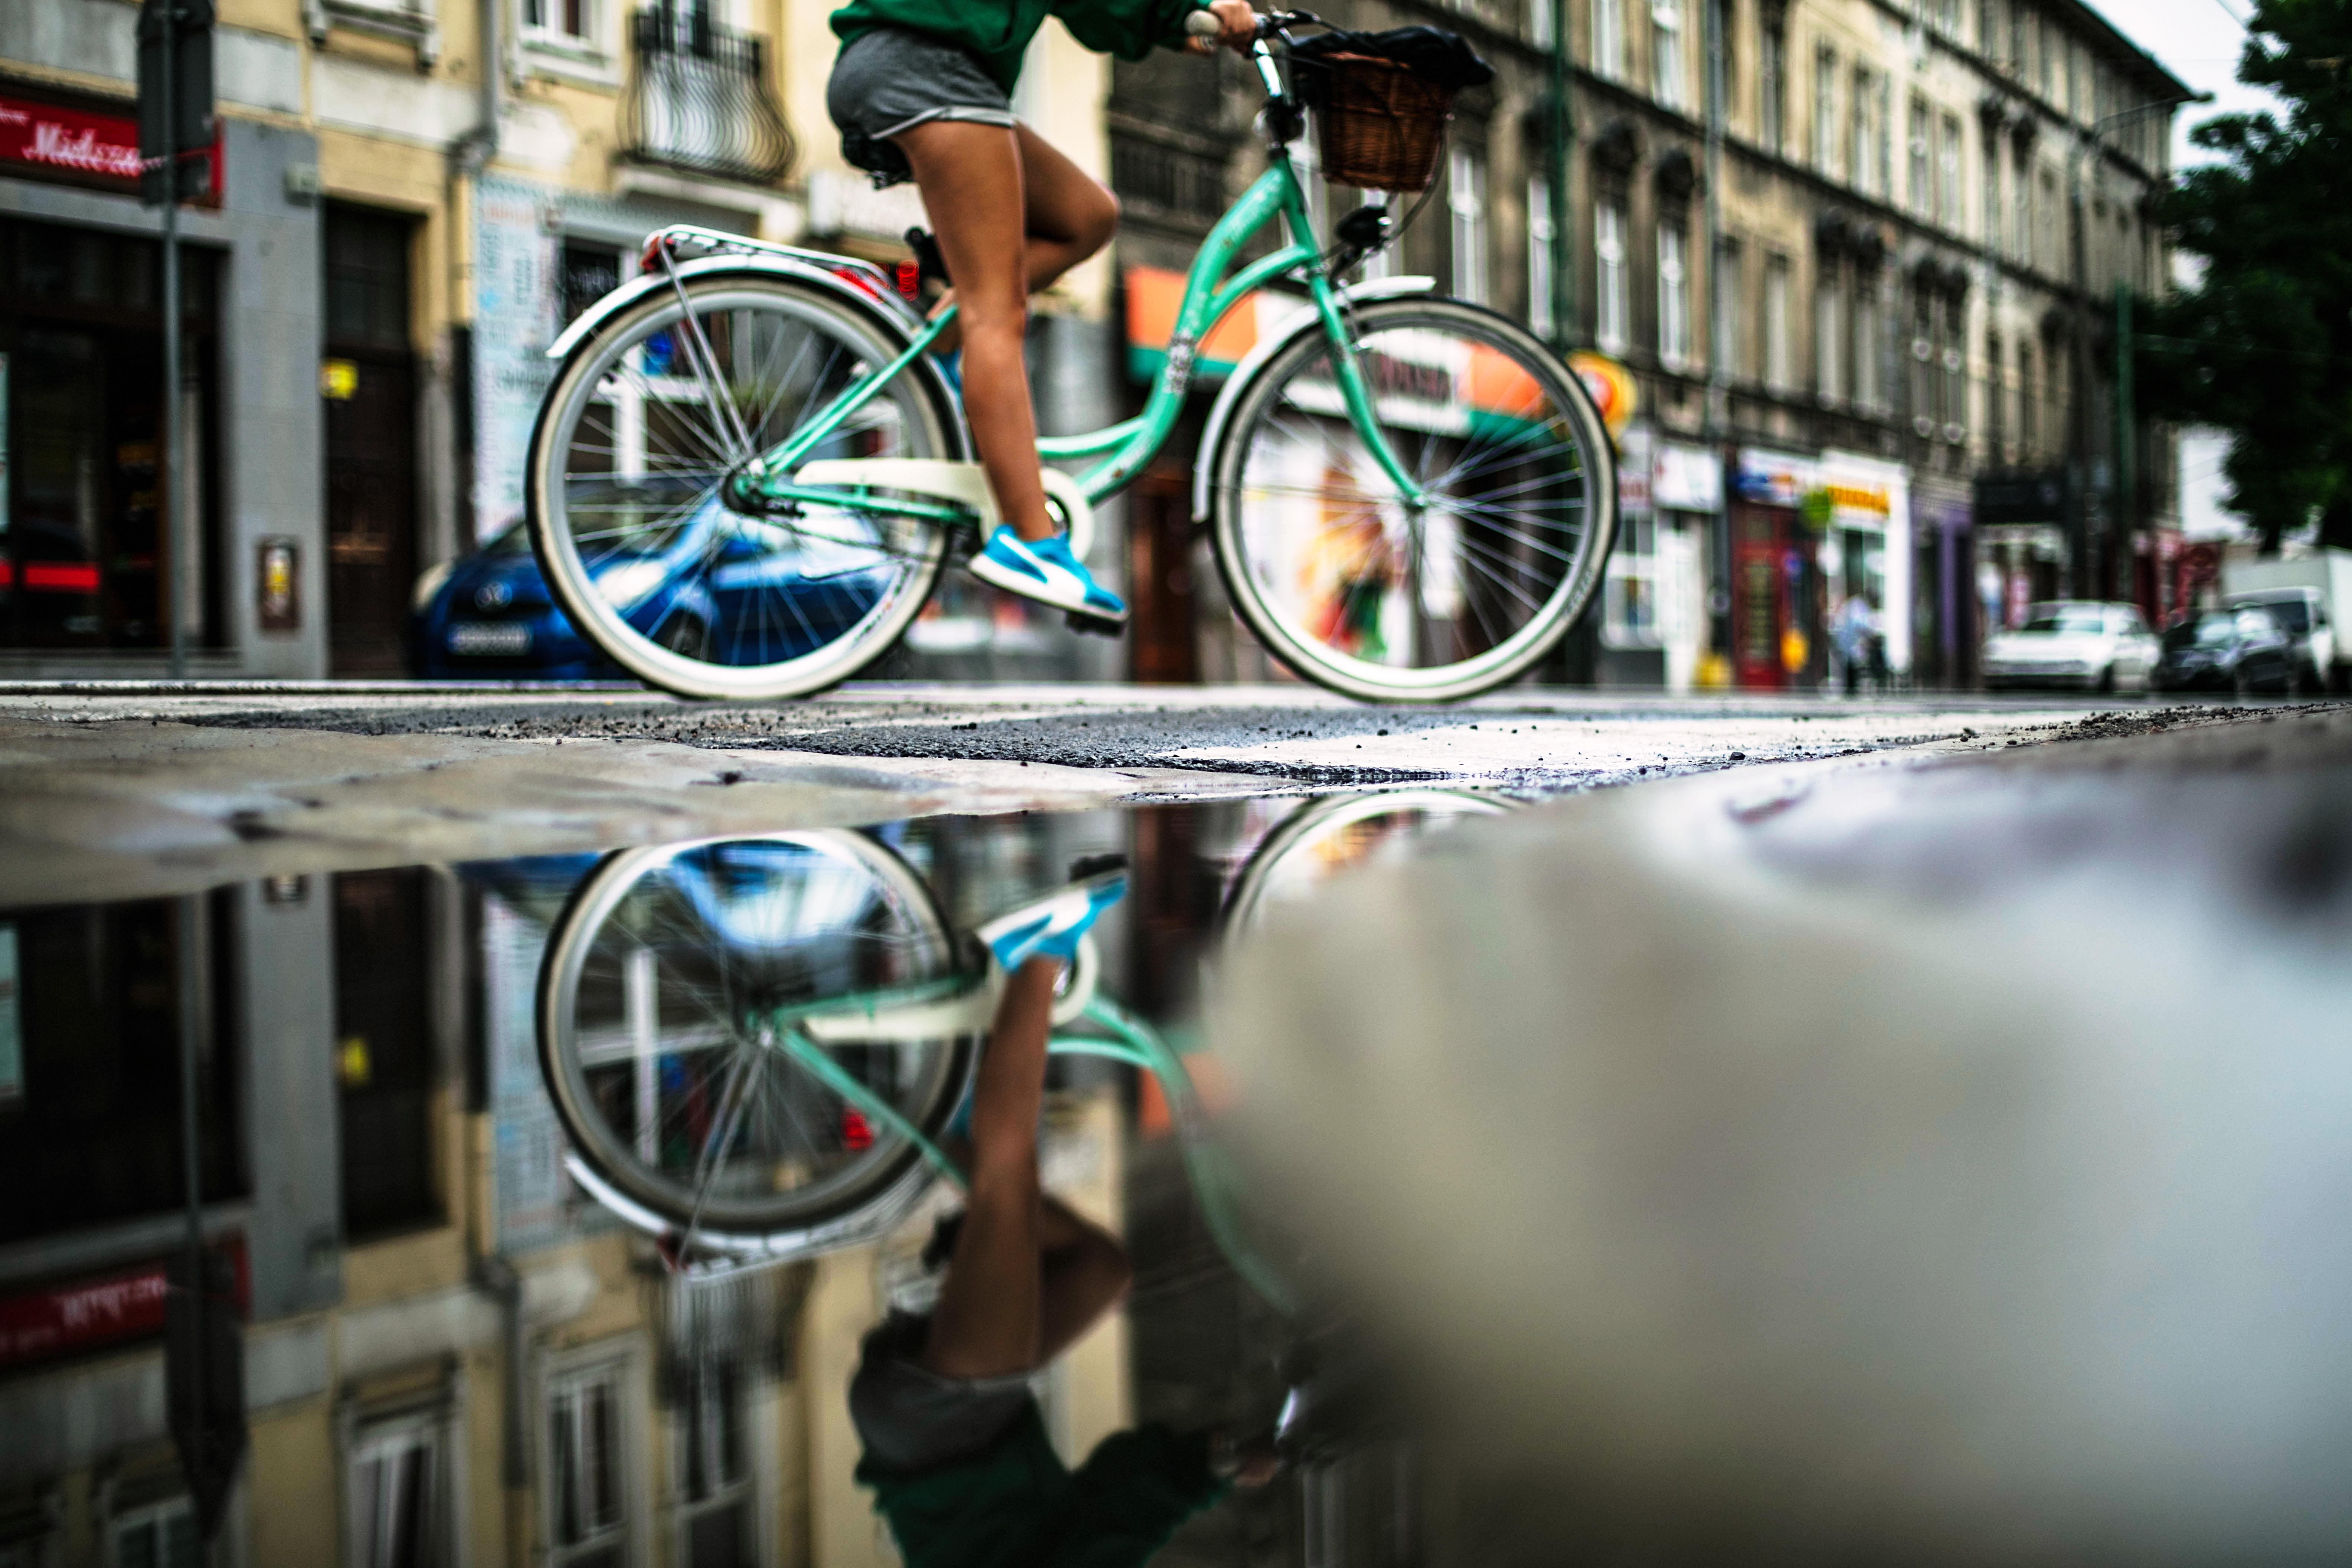 Haal je stalen ros van stal: waarom jij ook van fietstochten zal houden -  Greenpeace België